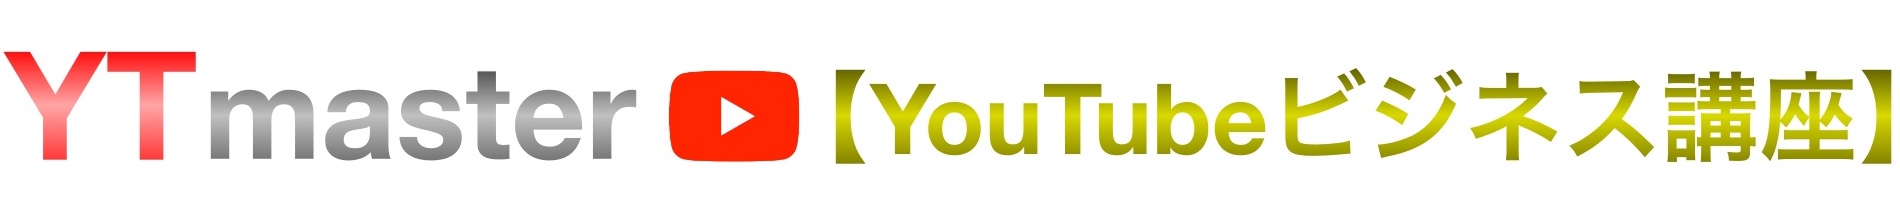 Youtube動画の右下に透かしロゴアイコンを表示させる方法 Ytmaster